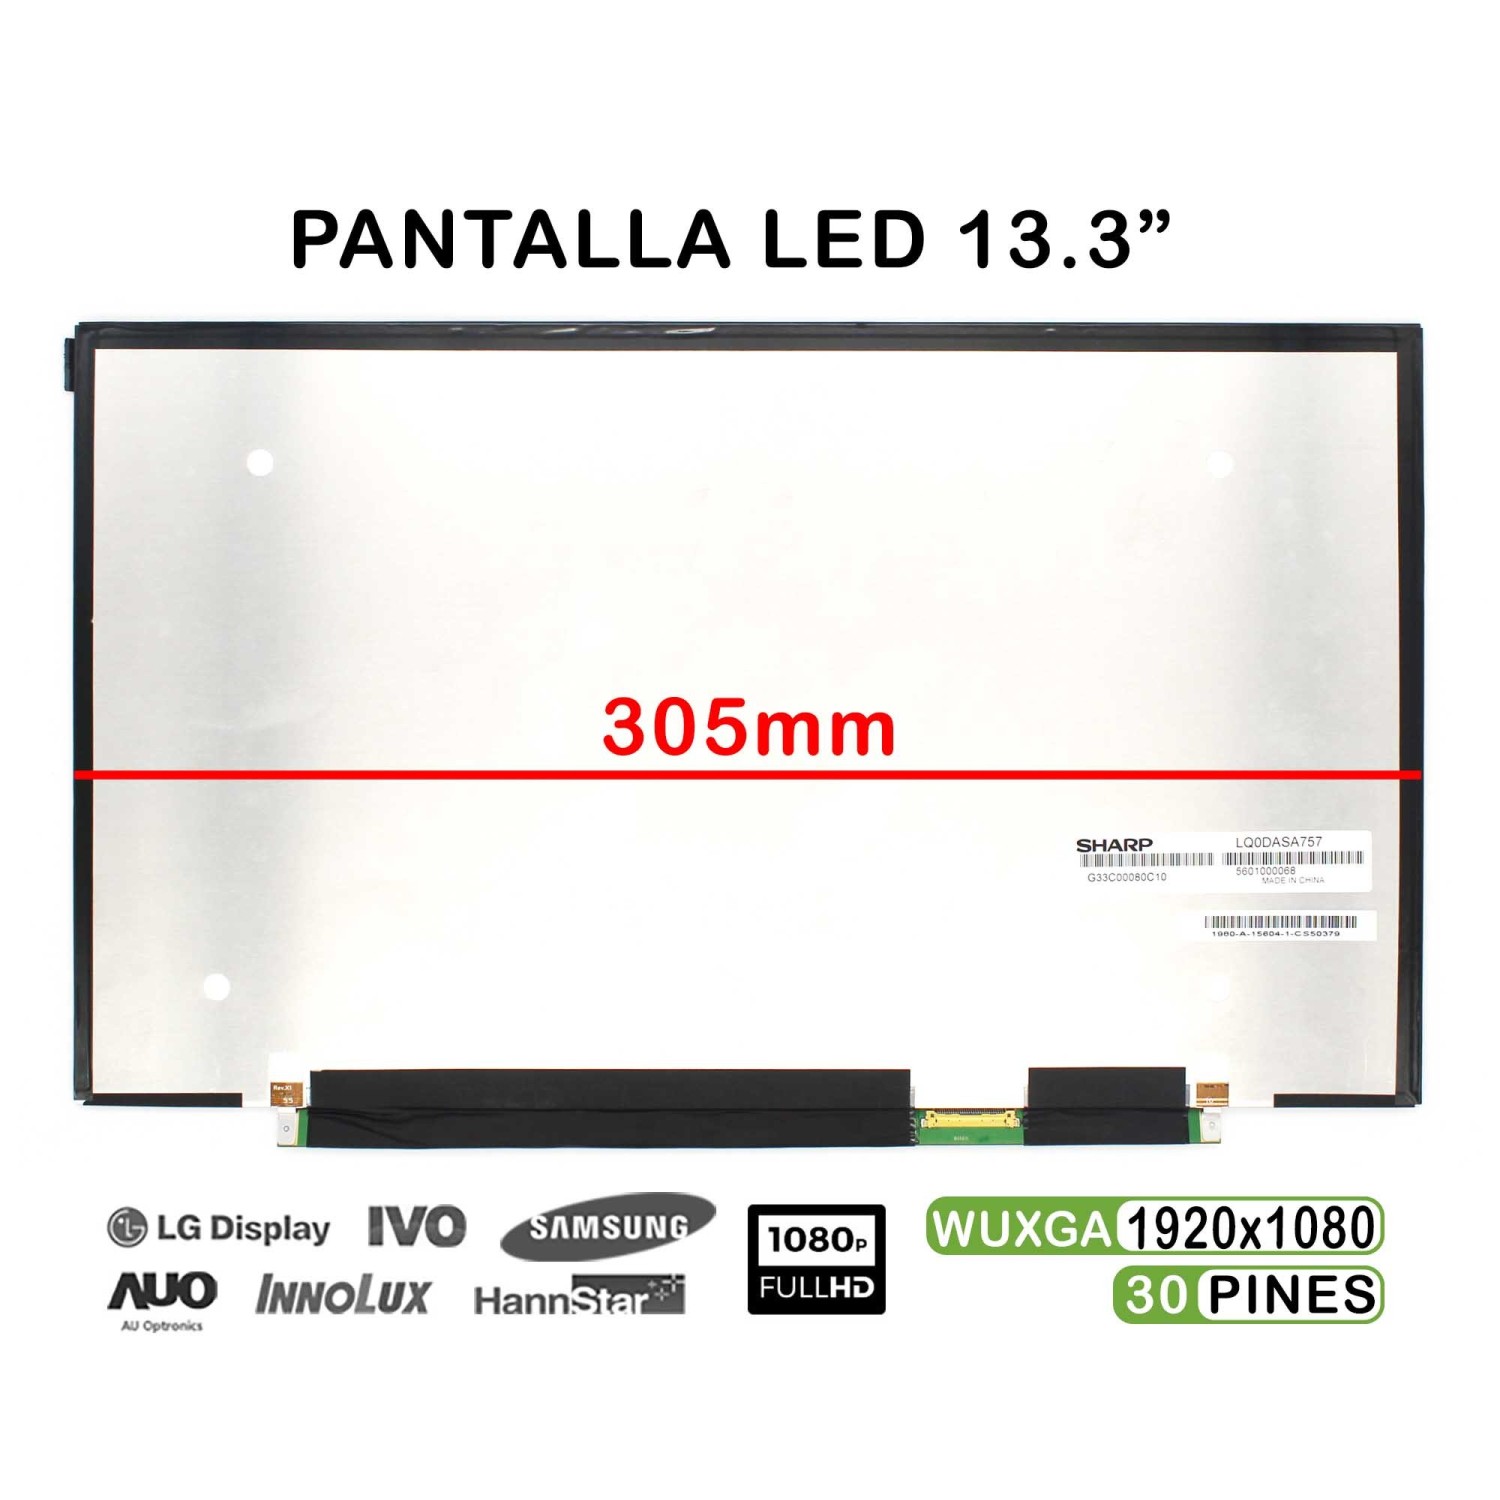 PANTALLA LED DE 13.3" PULGADAS PARA PORTÁTIL SHARP LQ133M1JW02A FHD 30 PINES 305MM